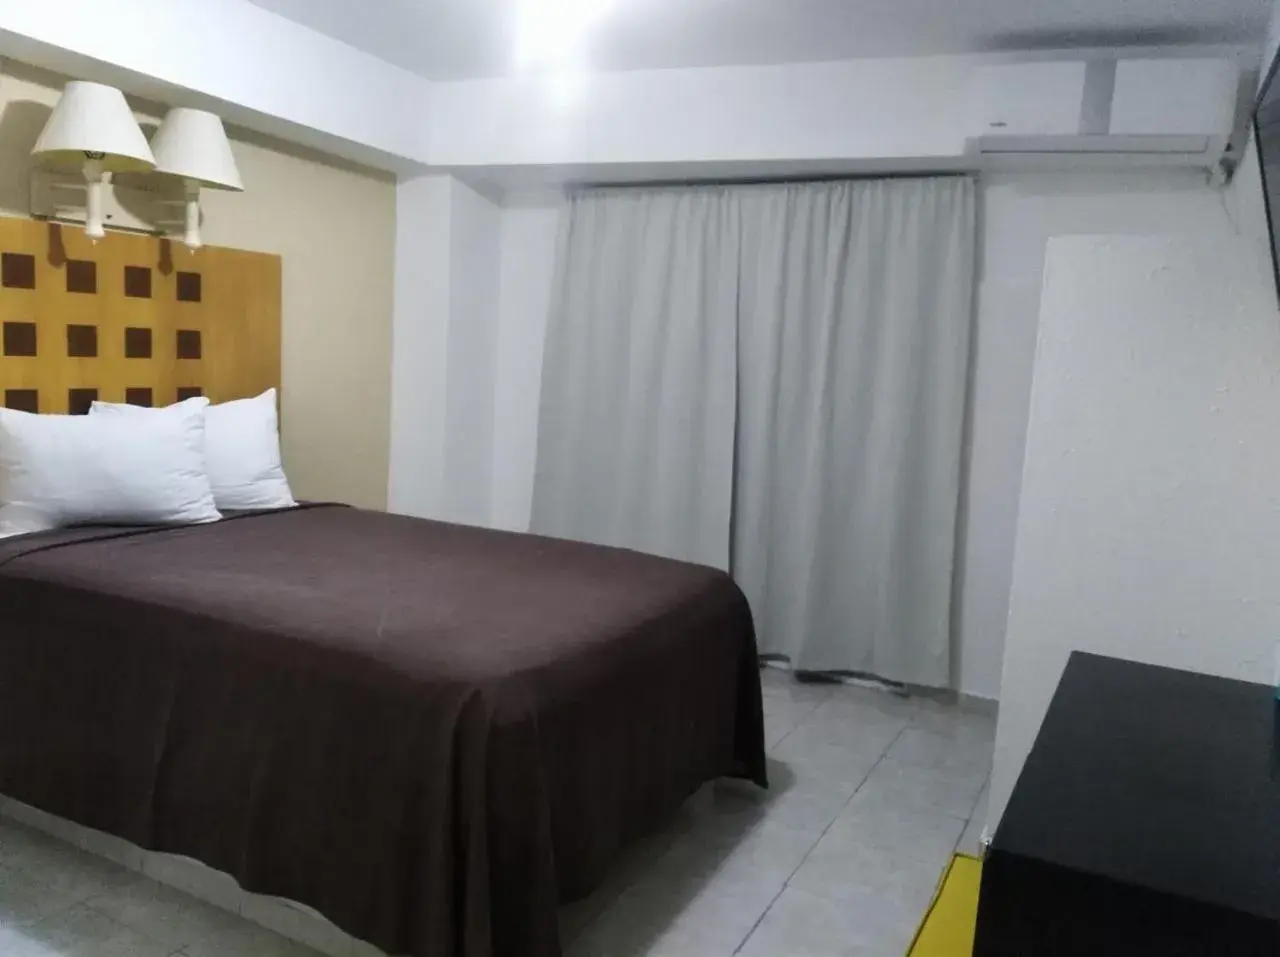 Bed in Hotel Posada del Carmen